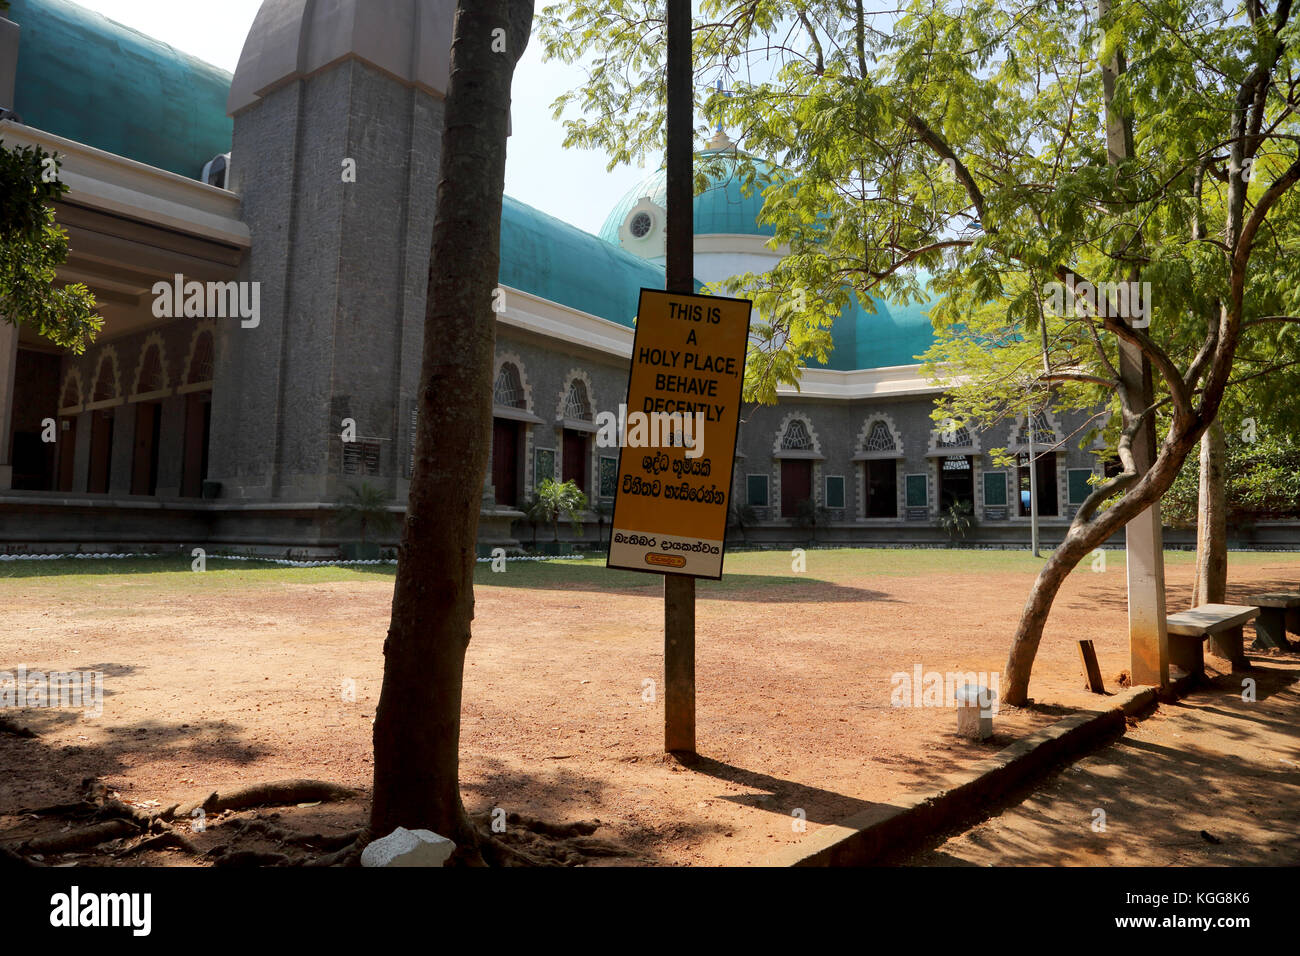 Basílica de Nuestra Señora de Lanka Sri lanka ragama tewatte signo multilingüe para mejor comportamiento 'Este es un lugar santo por favor comportarse decentemente' Foto de stock